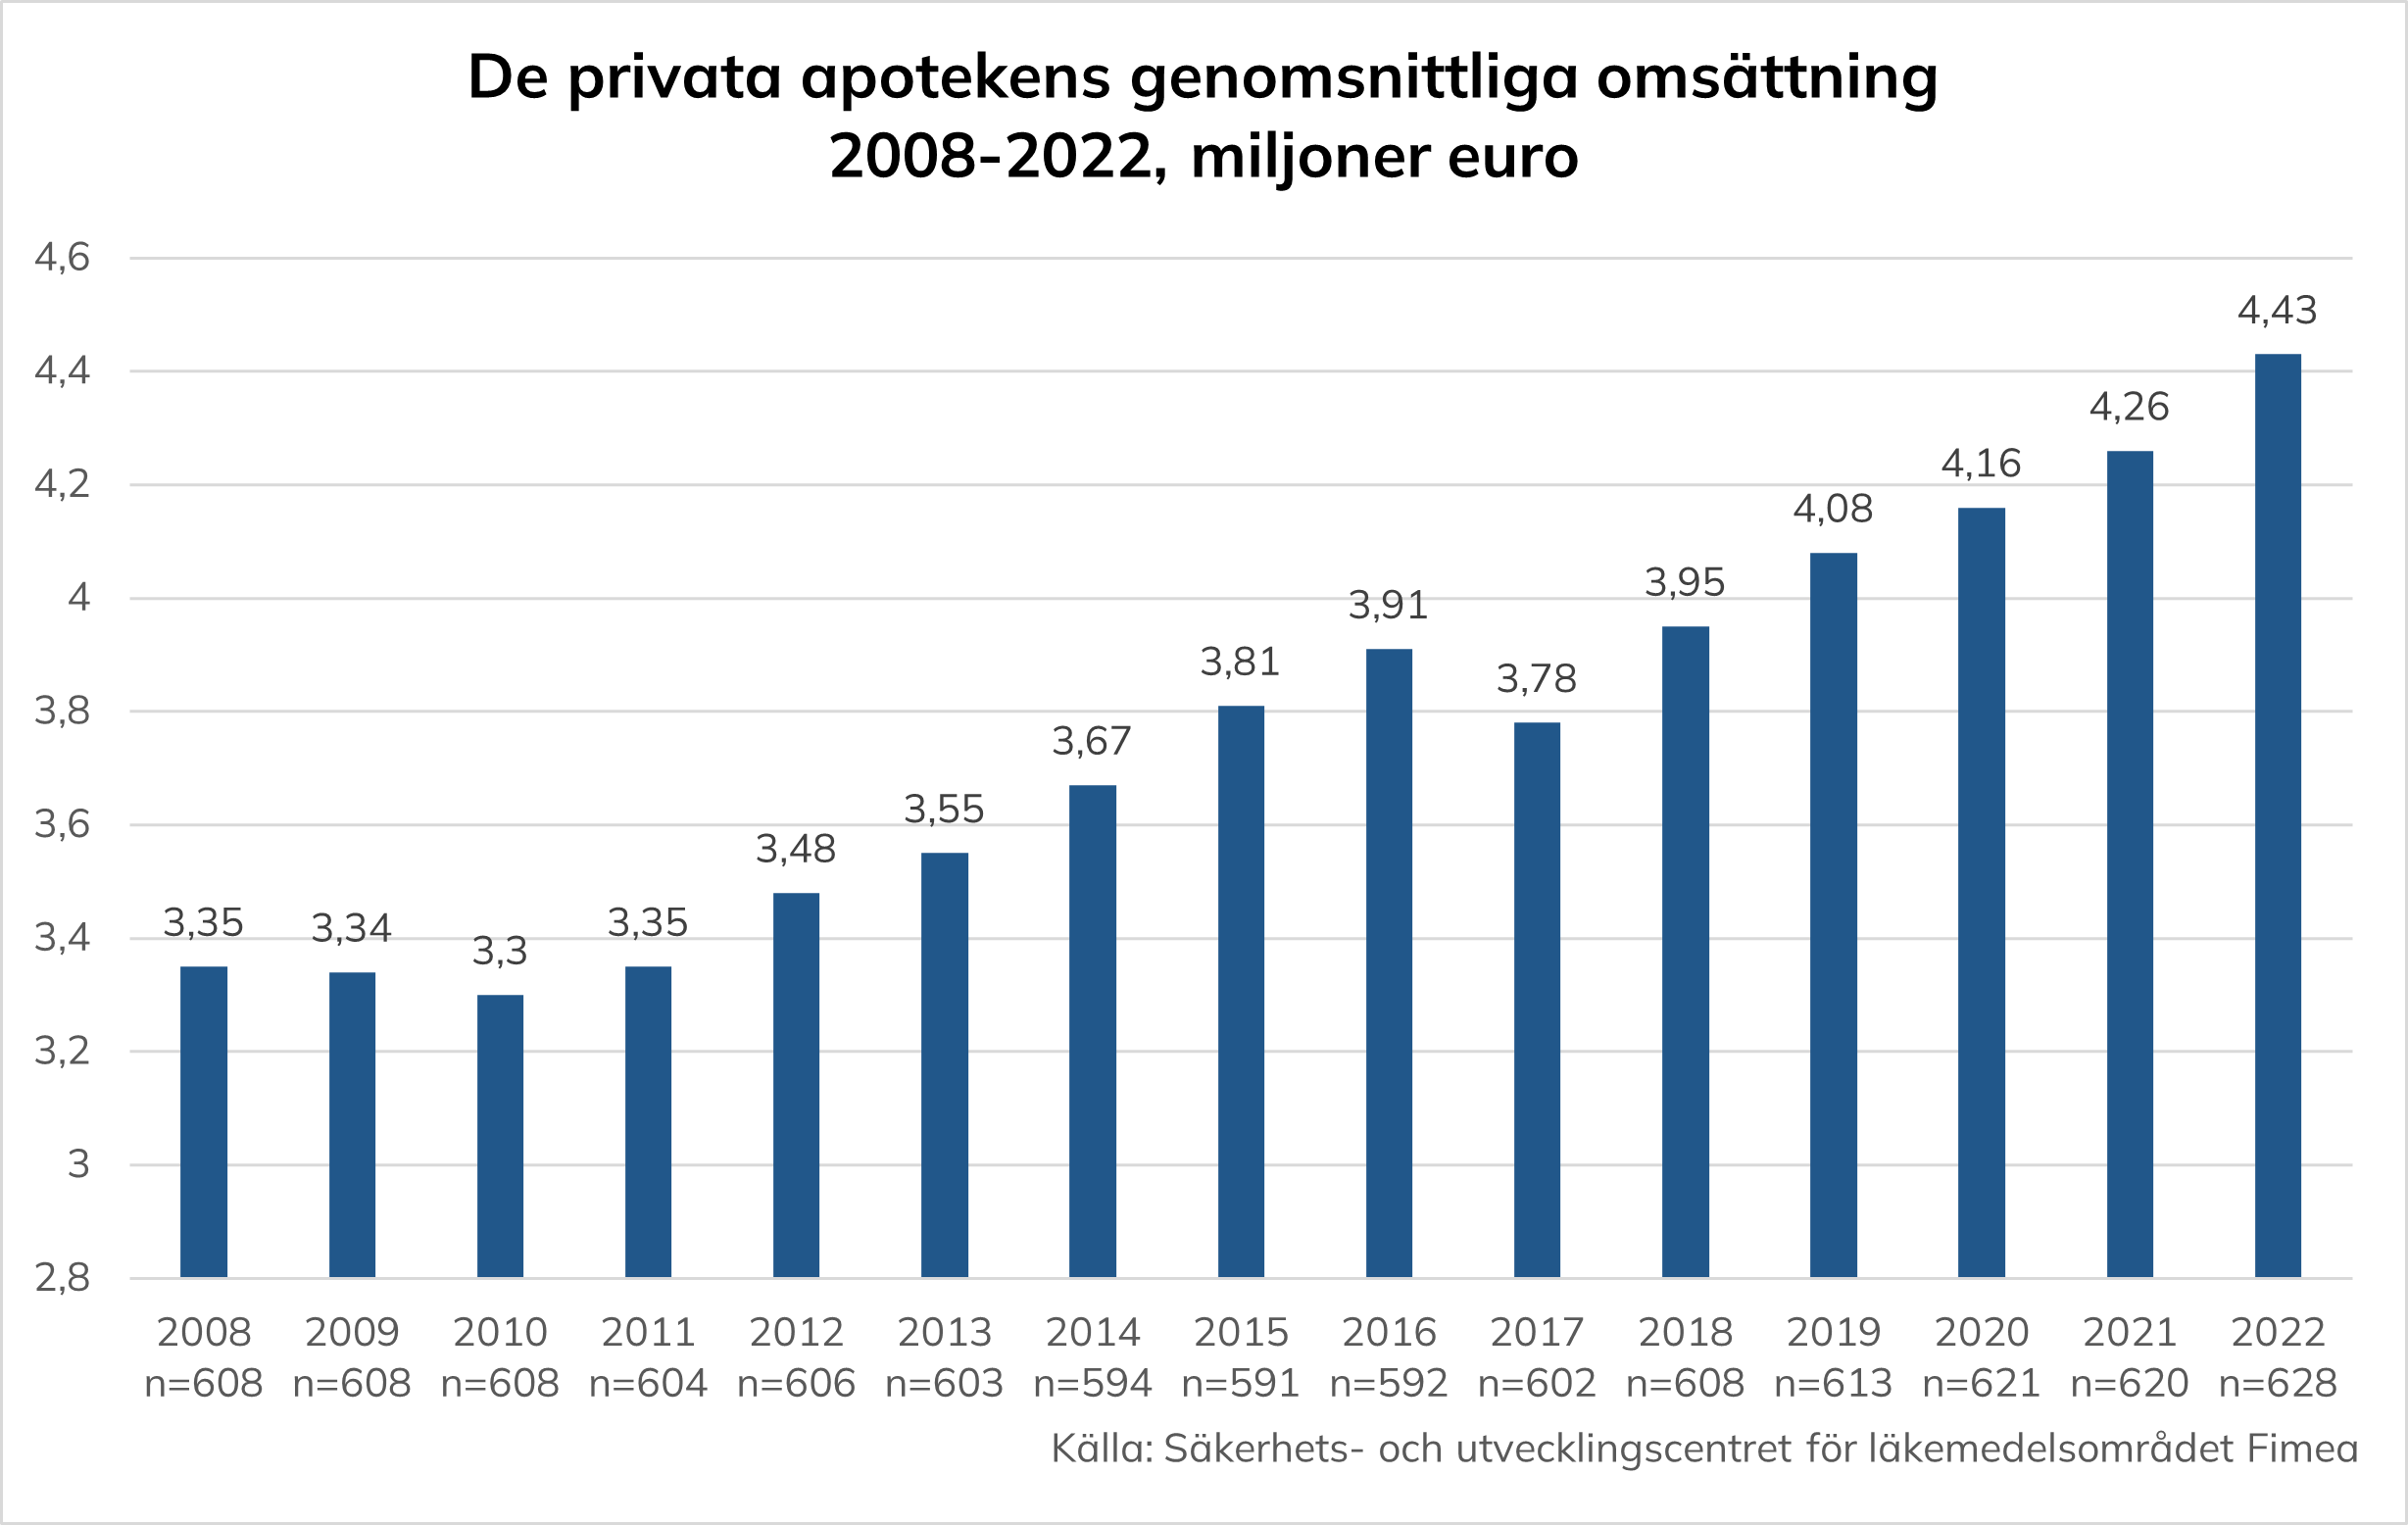 De privata apotekens genomsnittliga omsättning år 2008 var cirka 3,35 miljoner euro. År 2022 var den genomsnittliga omsättningen för privata apotek 4,43 miljoner euro. Under åren 2008-2022 har den genomsnittliga omsättningen på privata apotek ökat med cirka 32 procent.